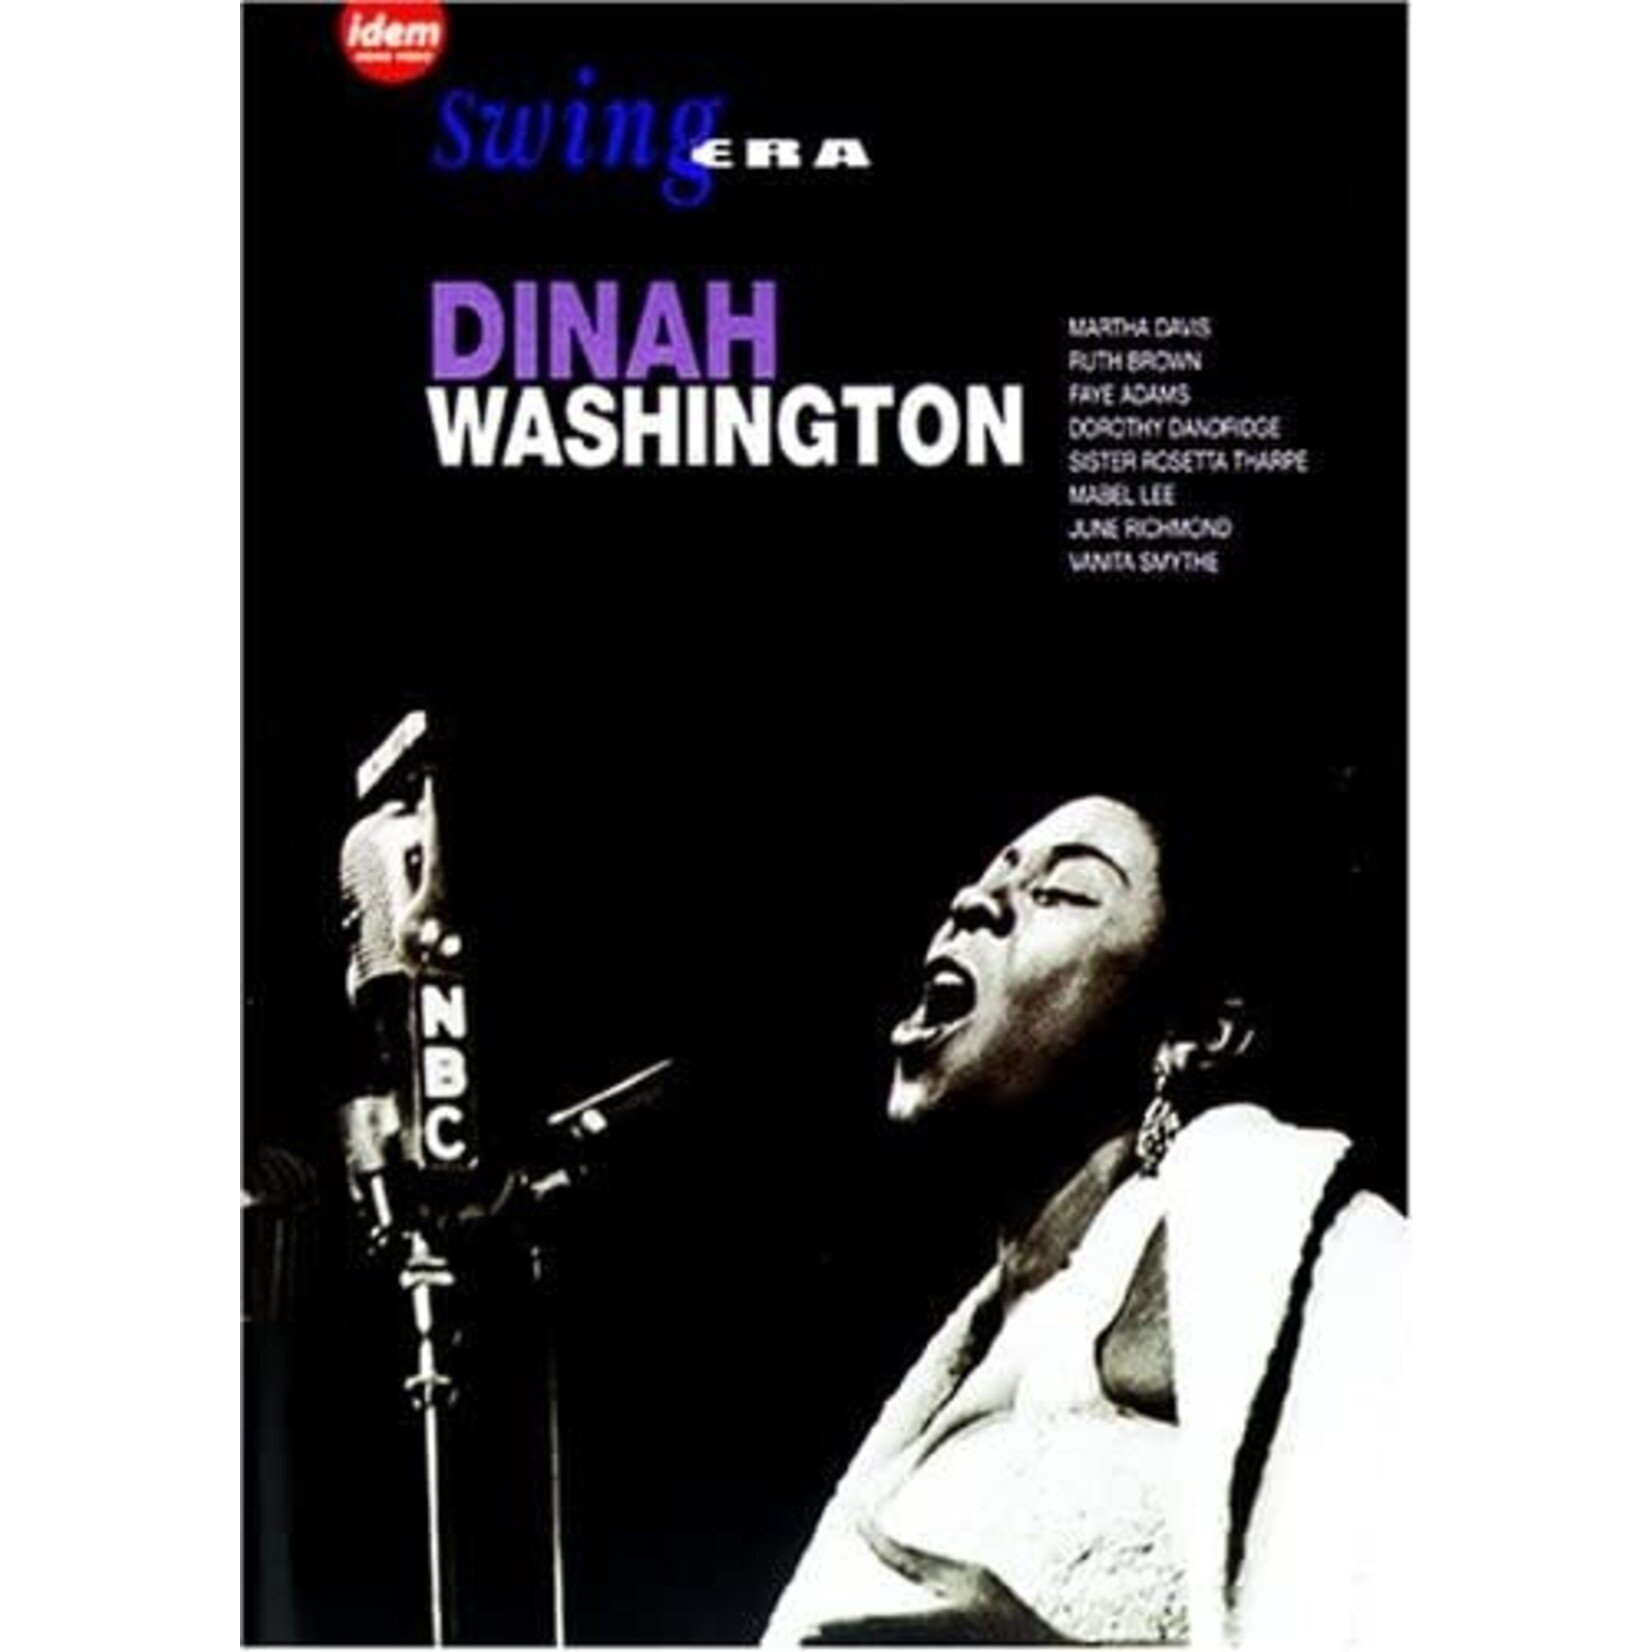 Dinah Washington - Swing Era [USED DVD]